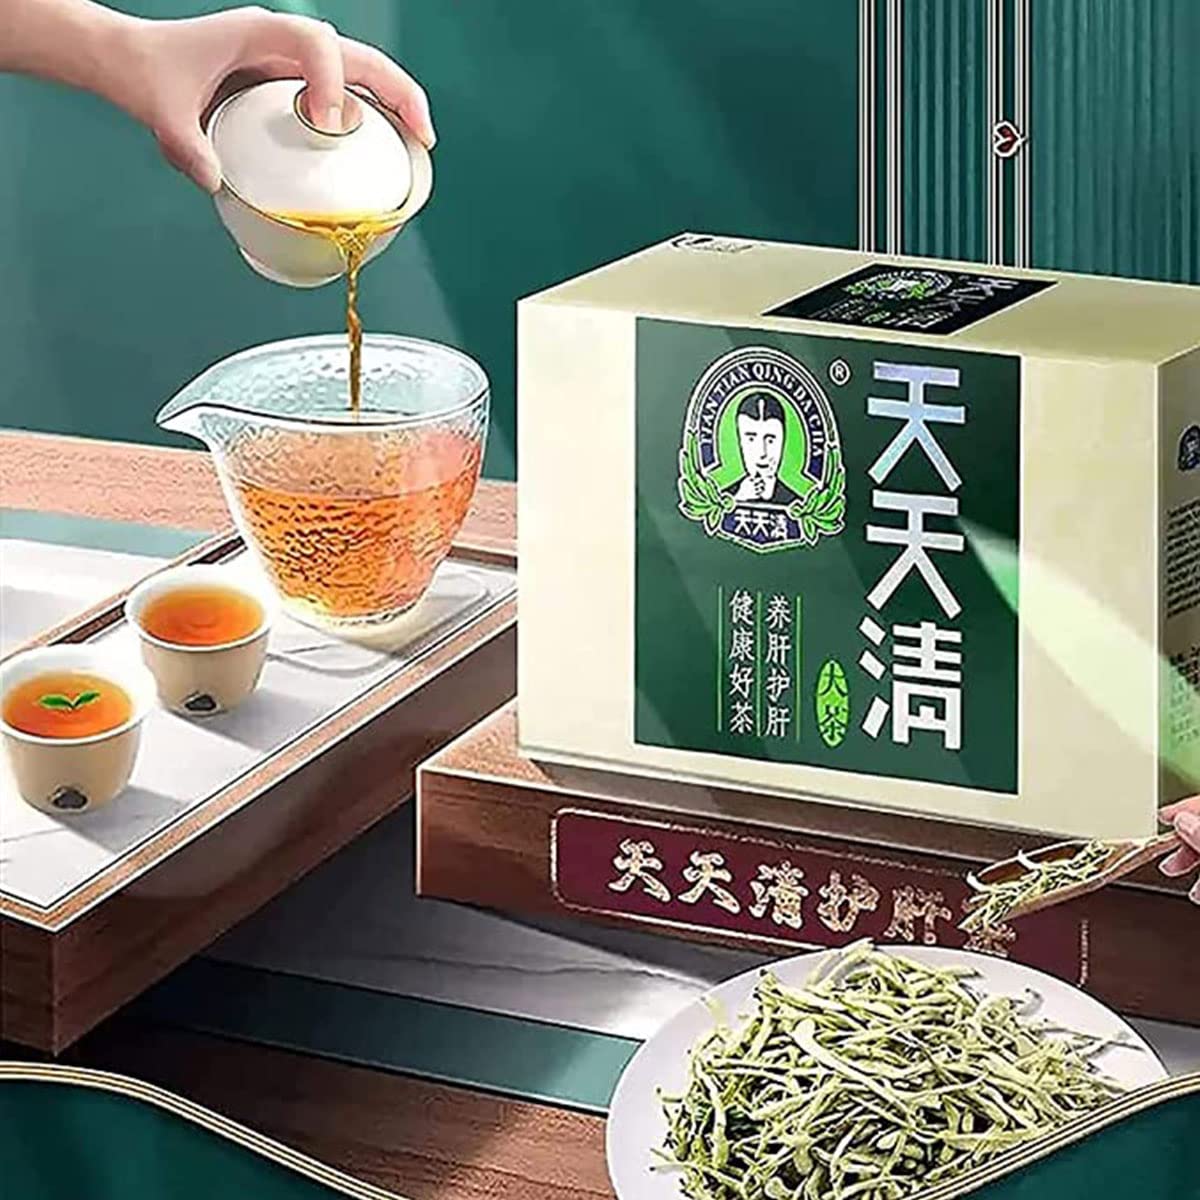 Everyday Nourishing Liver Tea, 2PCS Tian Tian Qing Da Cha (2 Box) (C)